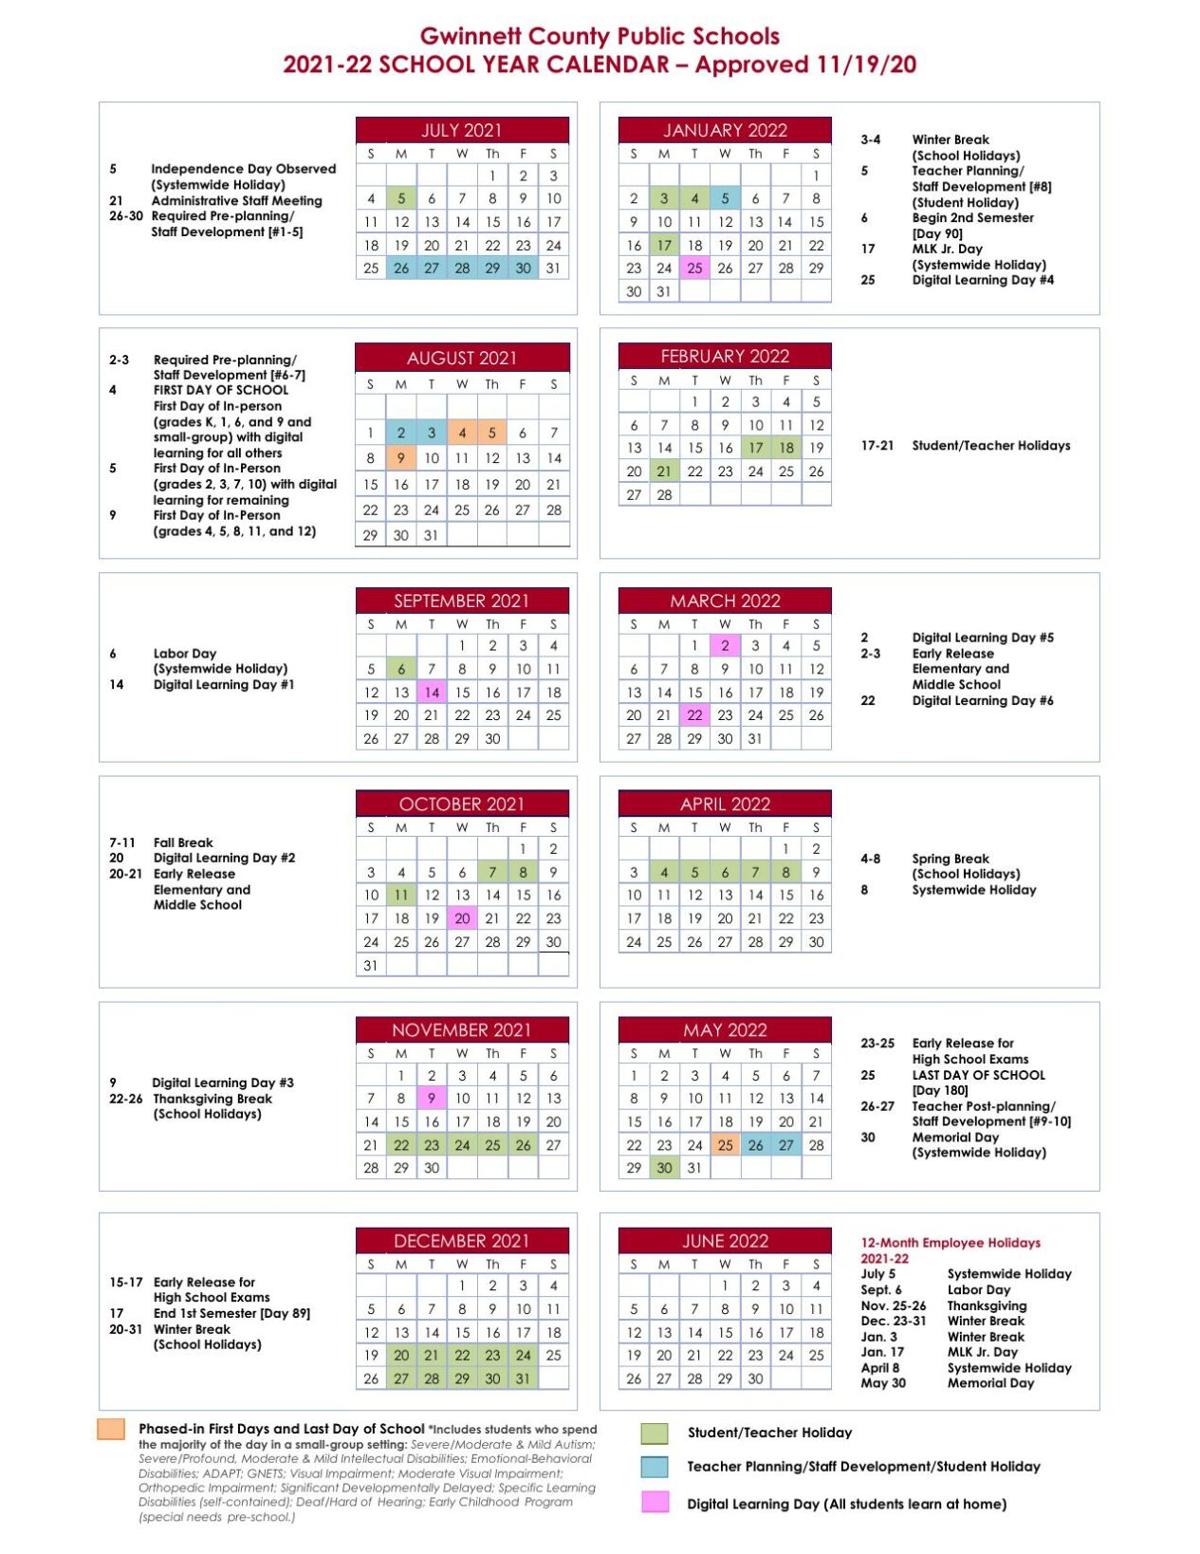 Ggc Calendar 2022 Gwinnett County Public Schools' 2021-2022 School Year Calendar | |  Gwinnettdailypost.com